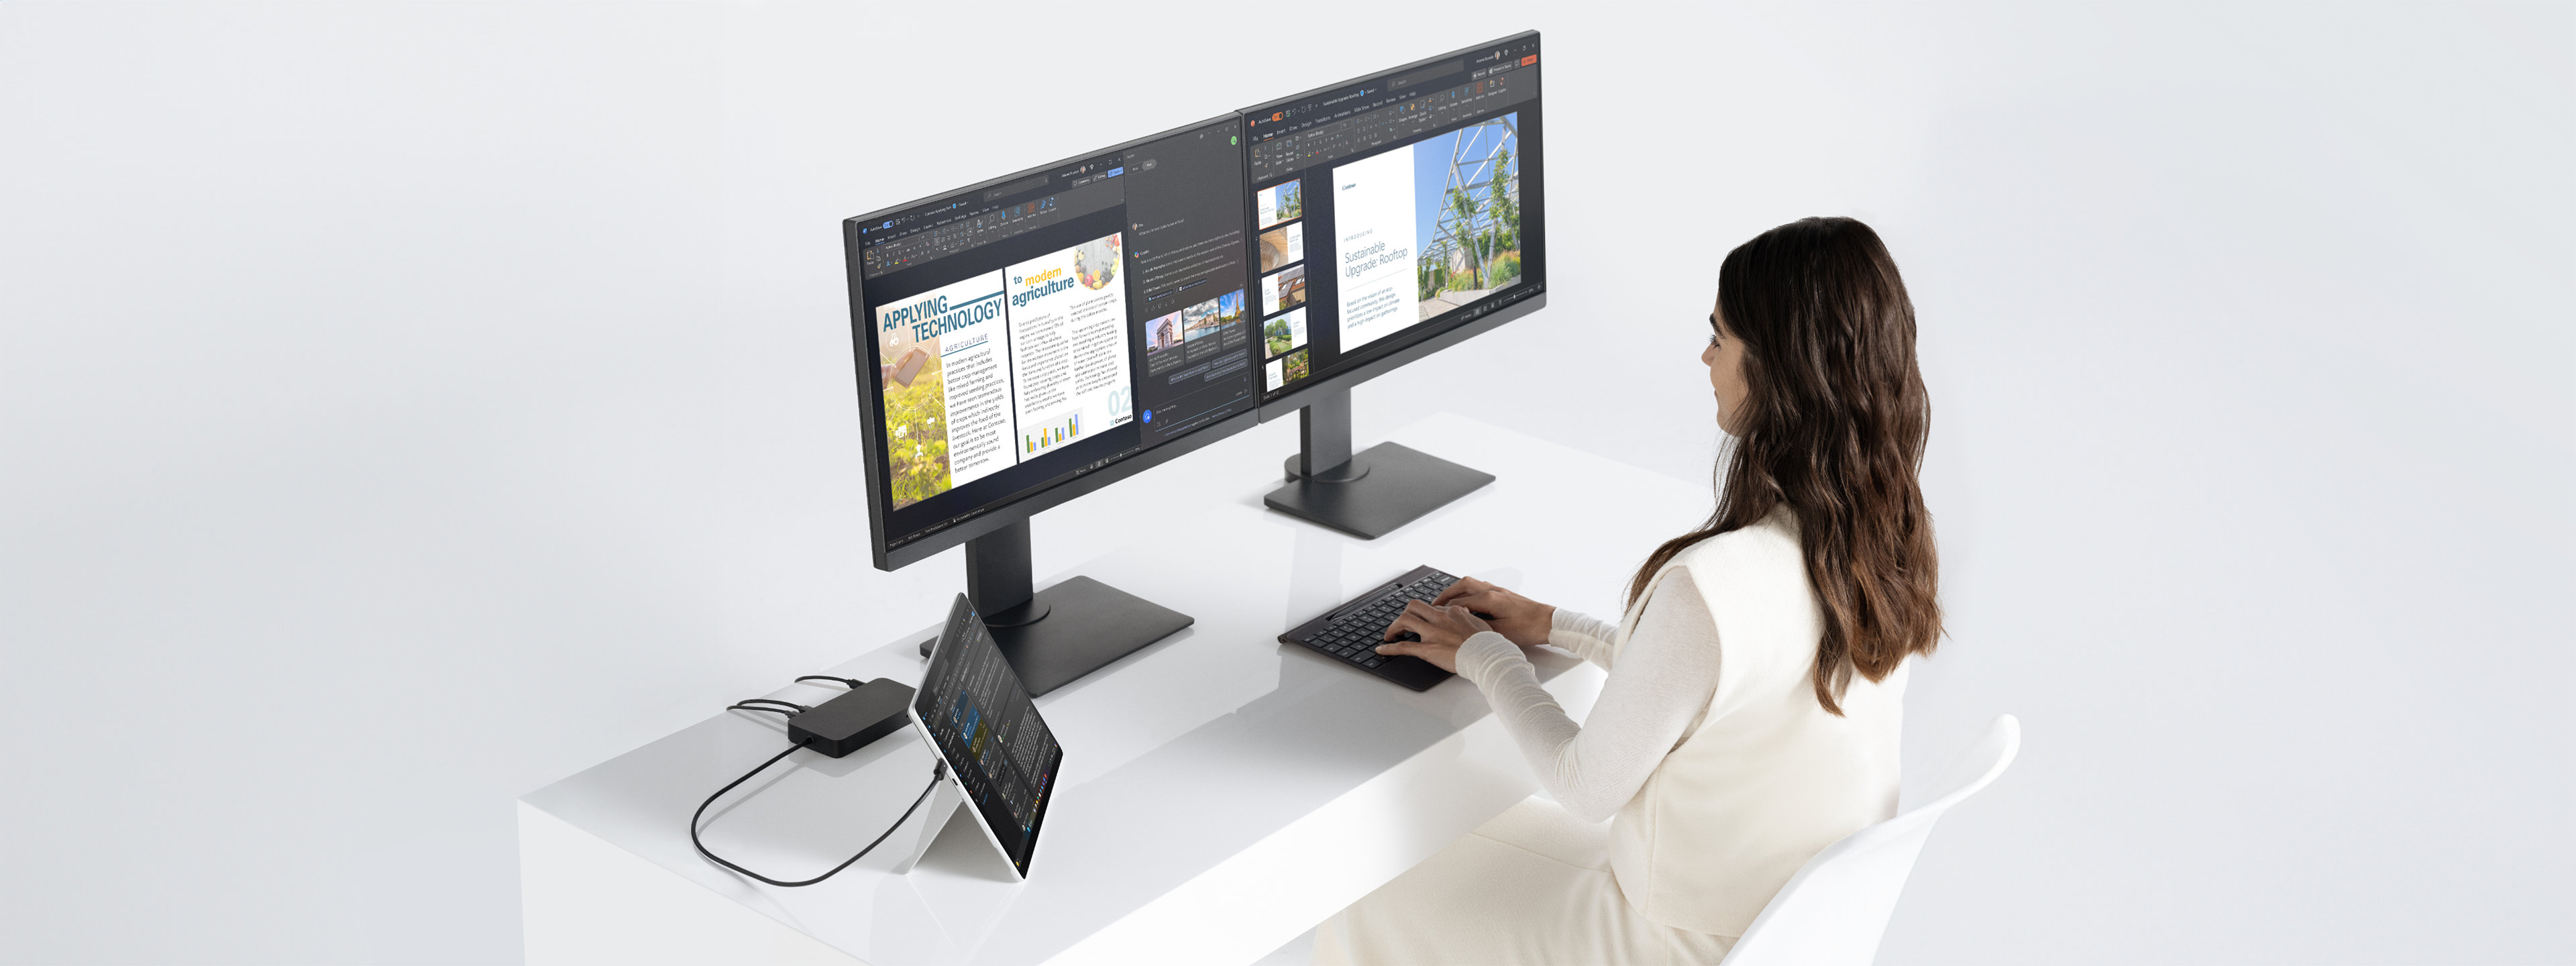 Une femme est assise à un bureau en train de travailler avec un appareil Surface Pro posé sur son pied intégré et connecté à deux écrans via une station d’accueil.